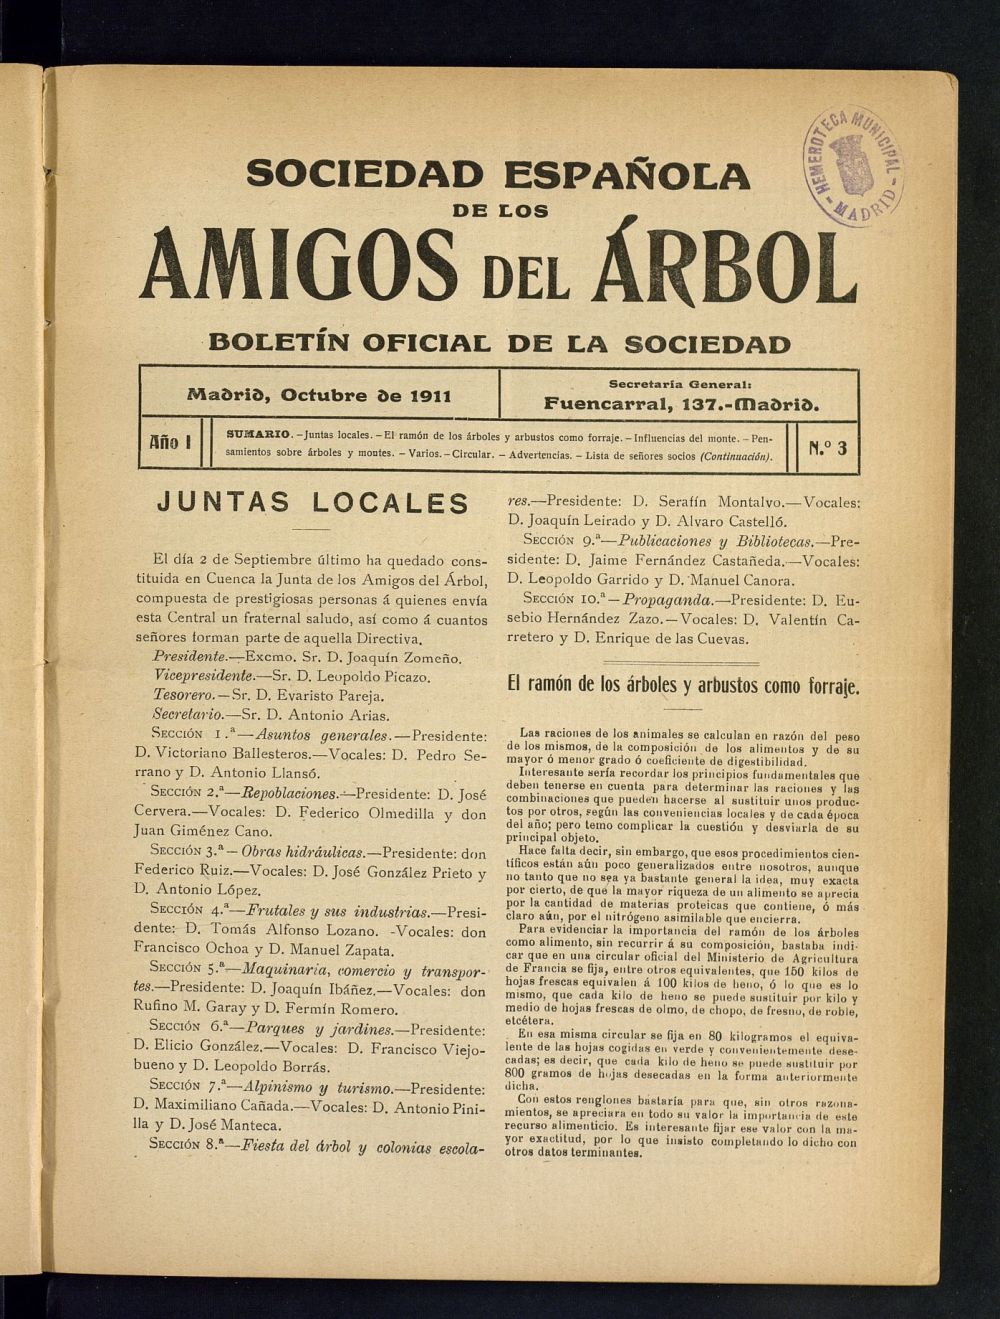 Boletn Comisin organizadora de la Sociedad Espaola de los amigos del rbol de octubre de 1911